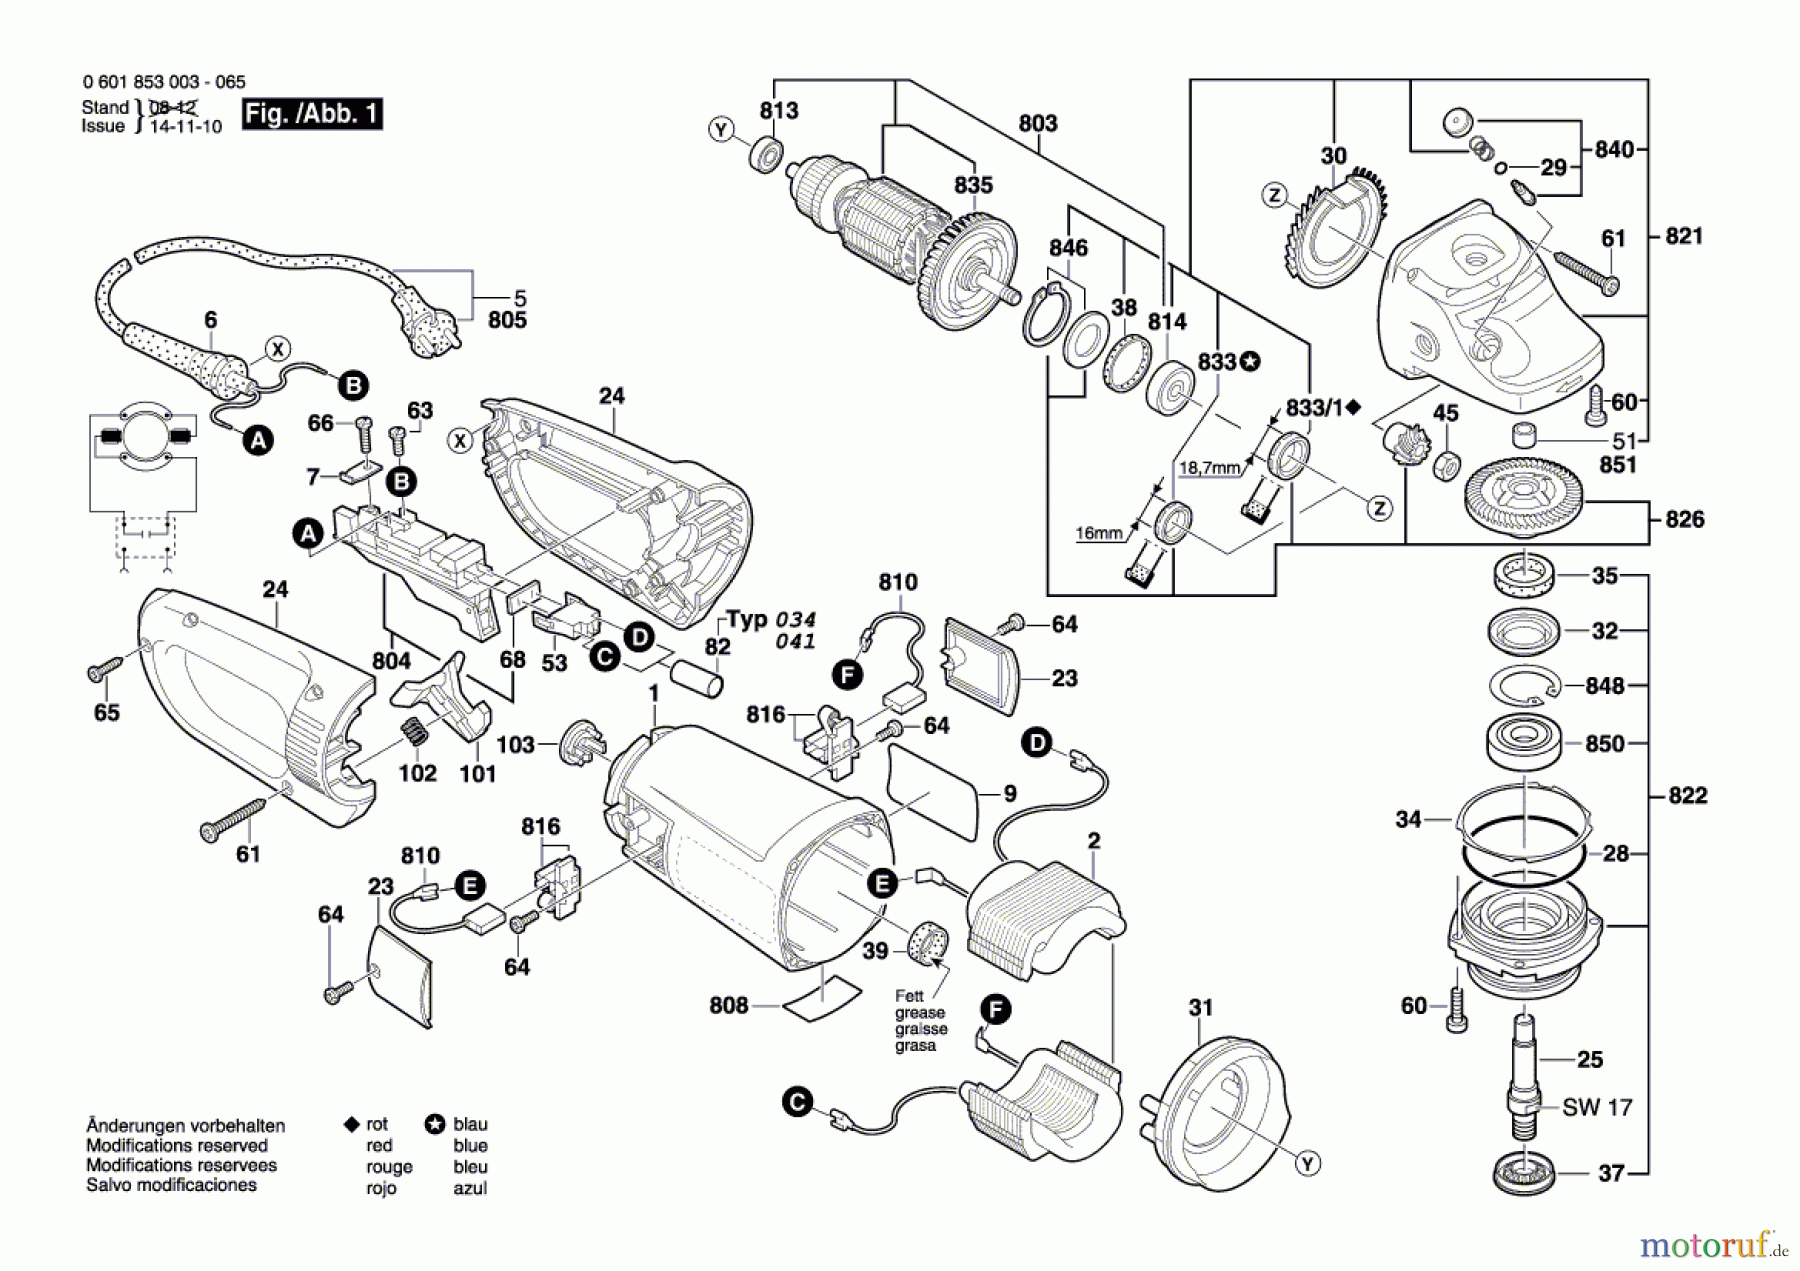  Bosch Werkzeug Winkelschleifer GWS 24-180 B Seite 1